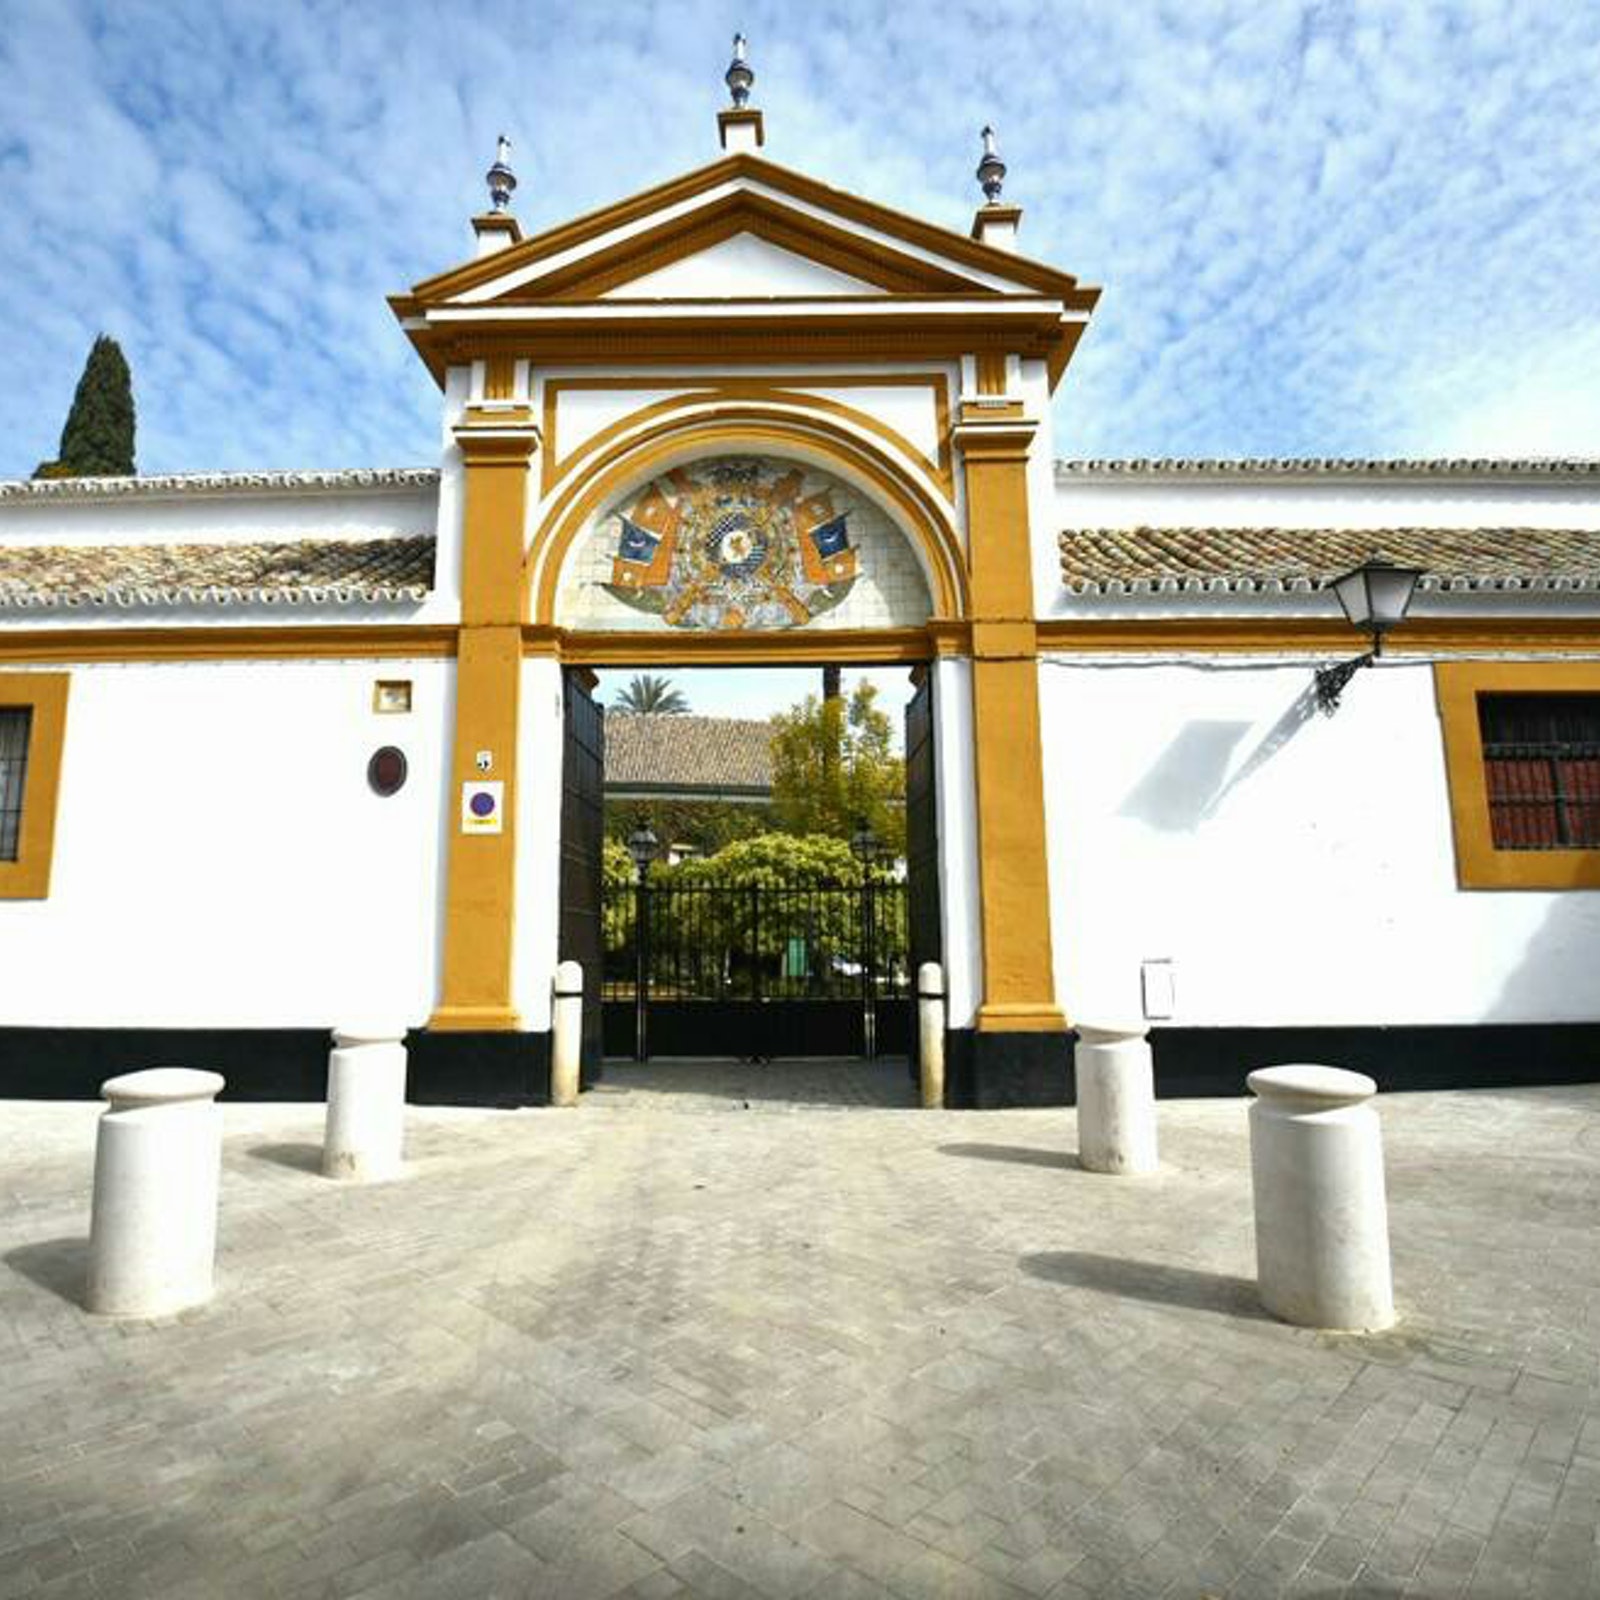 Casas Palacio Sevilla: Discover Seville's Palaces in Spain